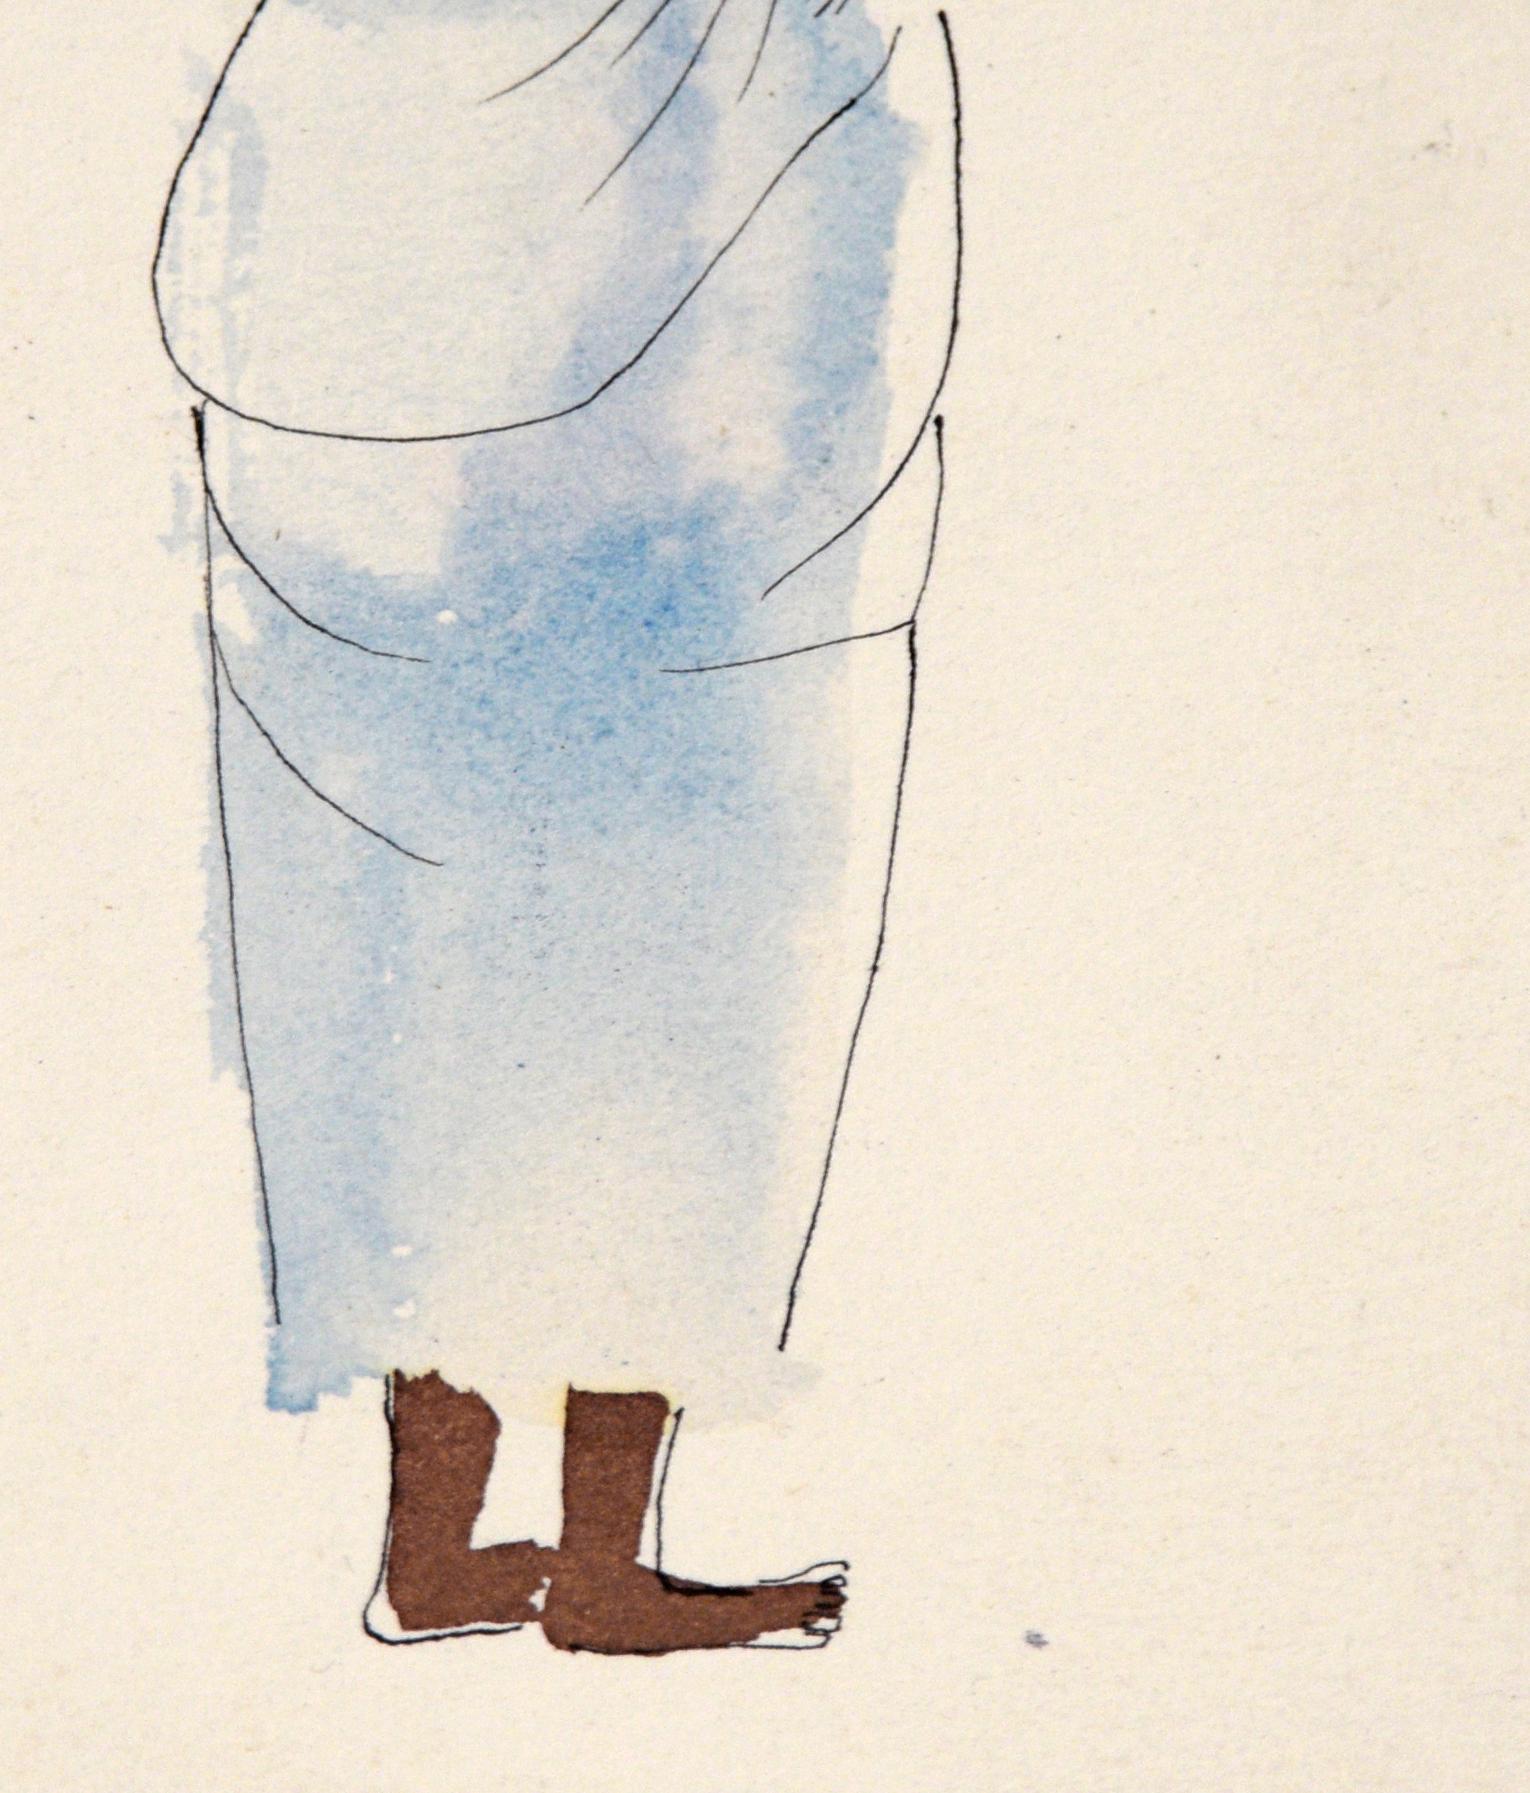 Afrikanische Mama – Vintage-Illustration in Tusche und Aquarell

Eine charmante Illustration von Irene Pattinson (Amerikanerin, 1909-1999) zeigt eine Frau mit einem Eimer auf dem Kopf und einem Baby in einem Tragetuch auf dem Rücken. Sie liest aus